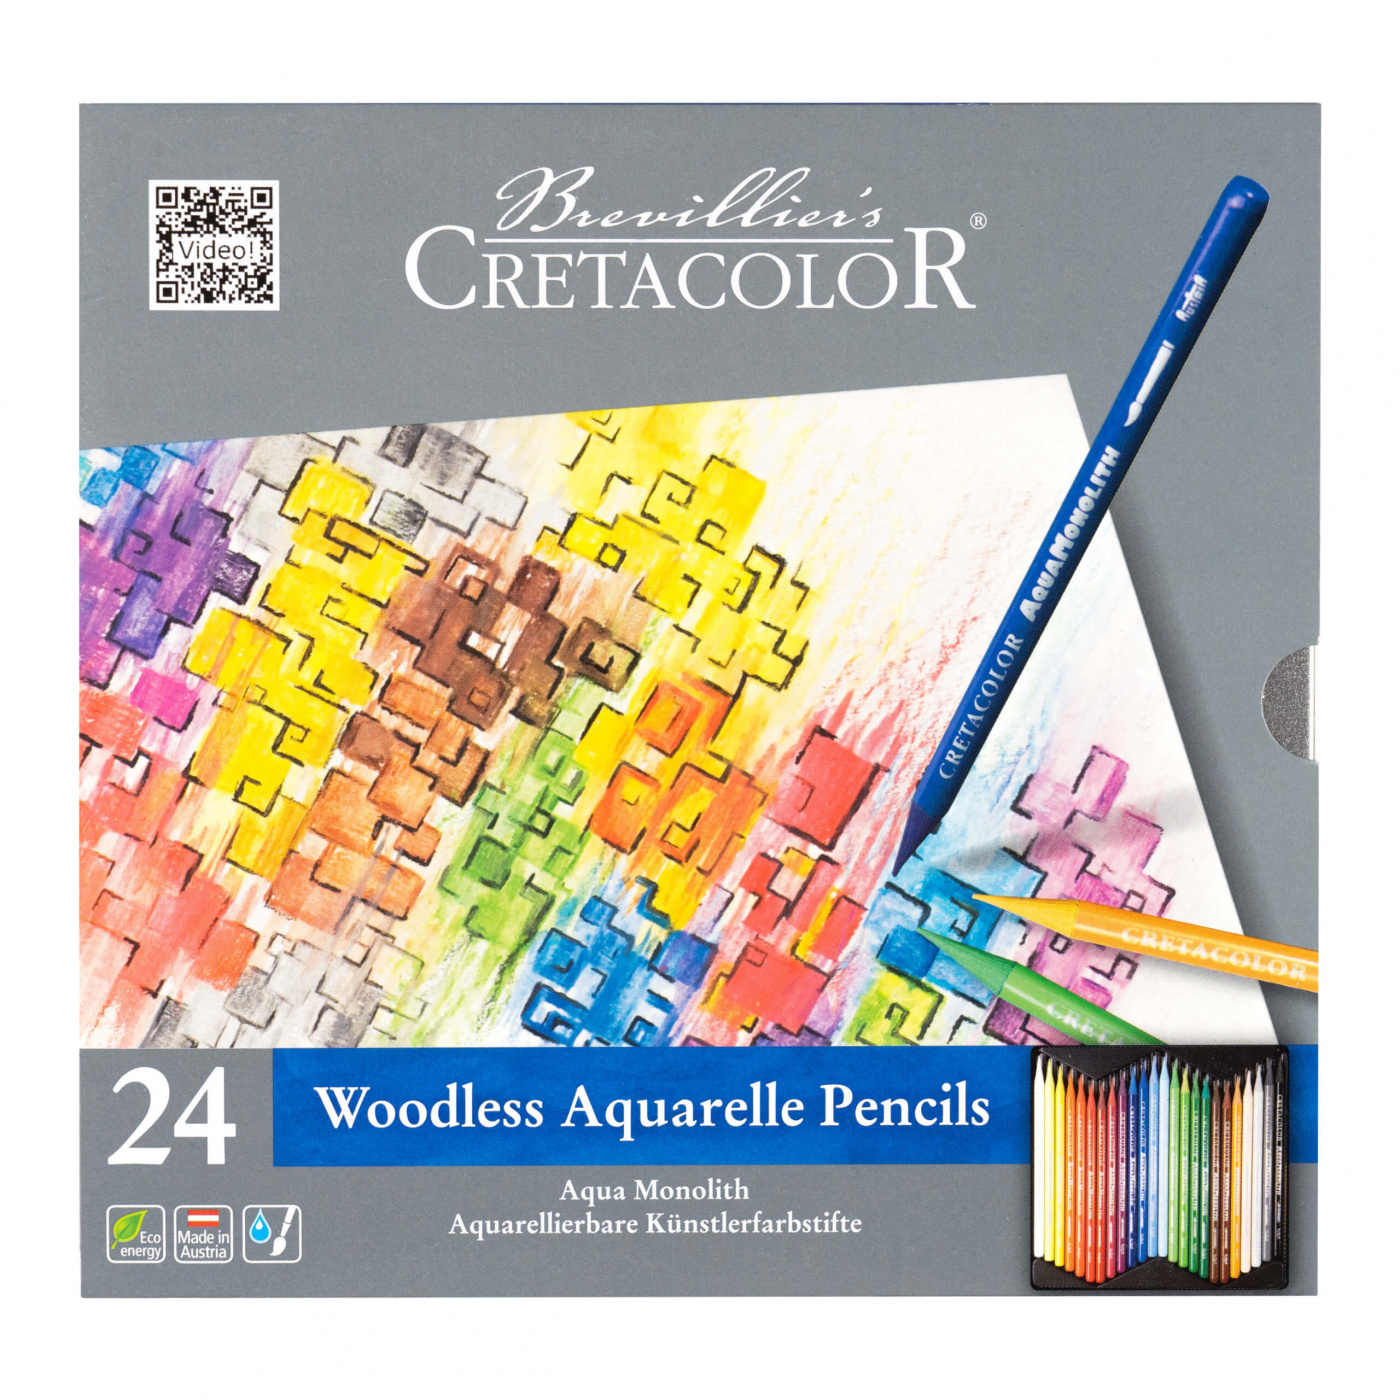 набор для рисования cretacolor creativo 27 предметов в метал коробке Набор карандашей акварельных Cretacolor 